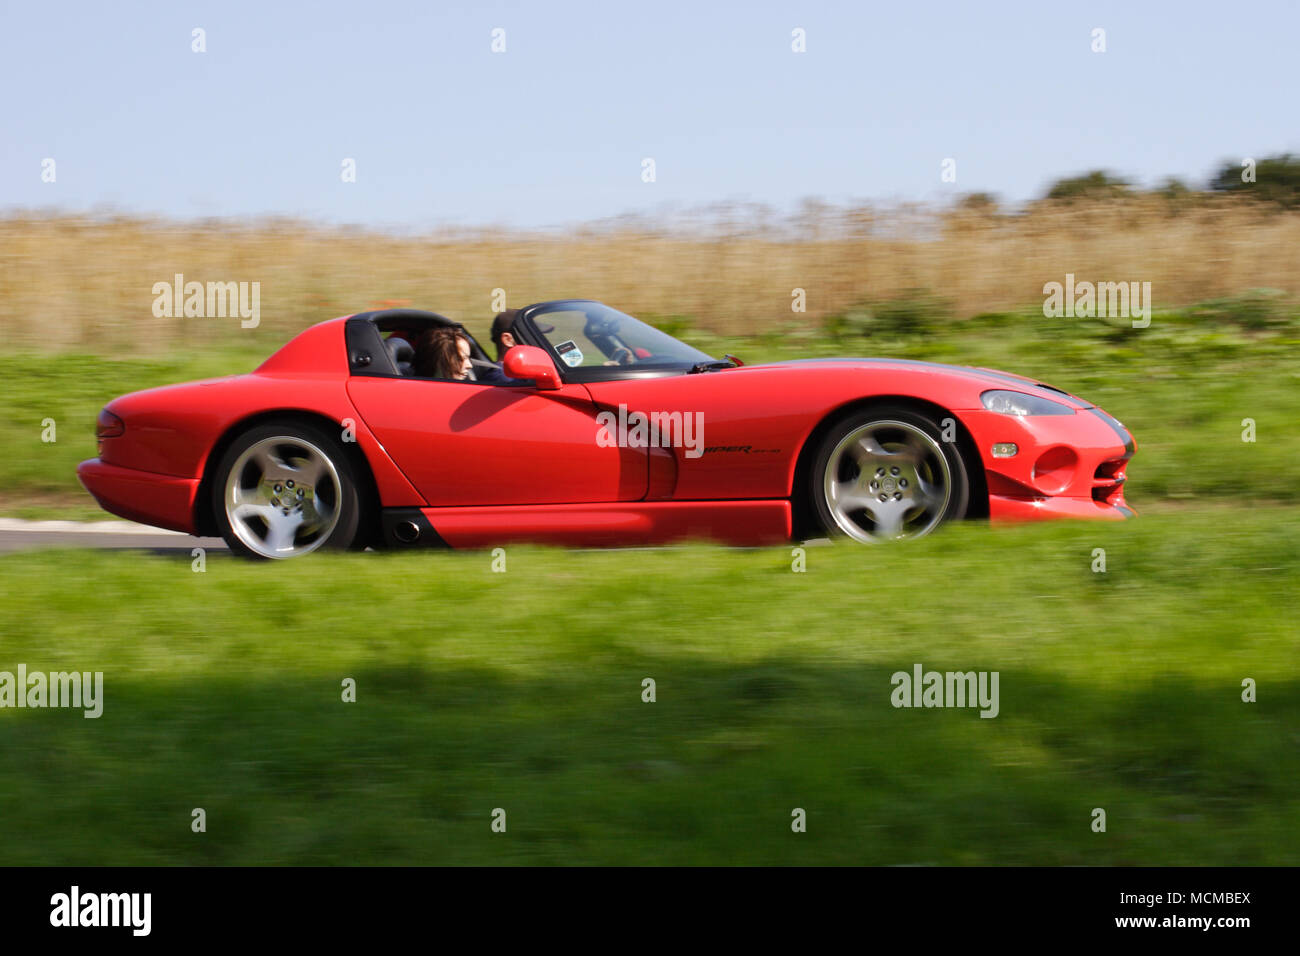 Profil (vue de côté) d'une Dodge Viper rouge voiture de sport américaine conduite rapide. Banque D'Images